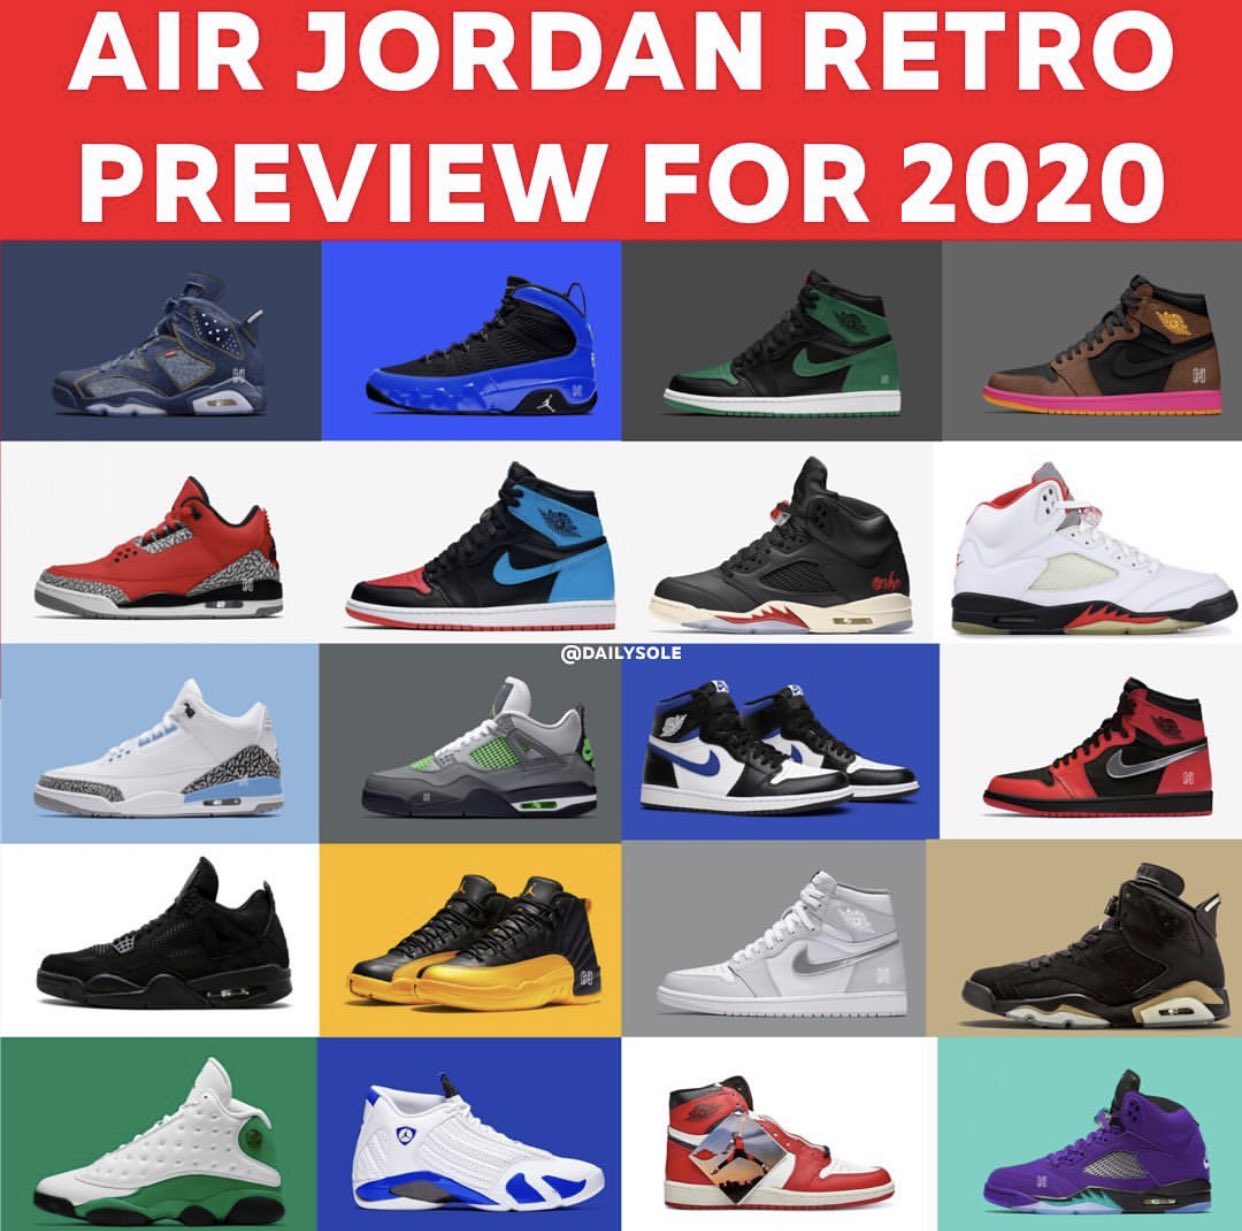 air jordans released in 2020